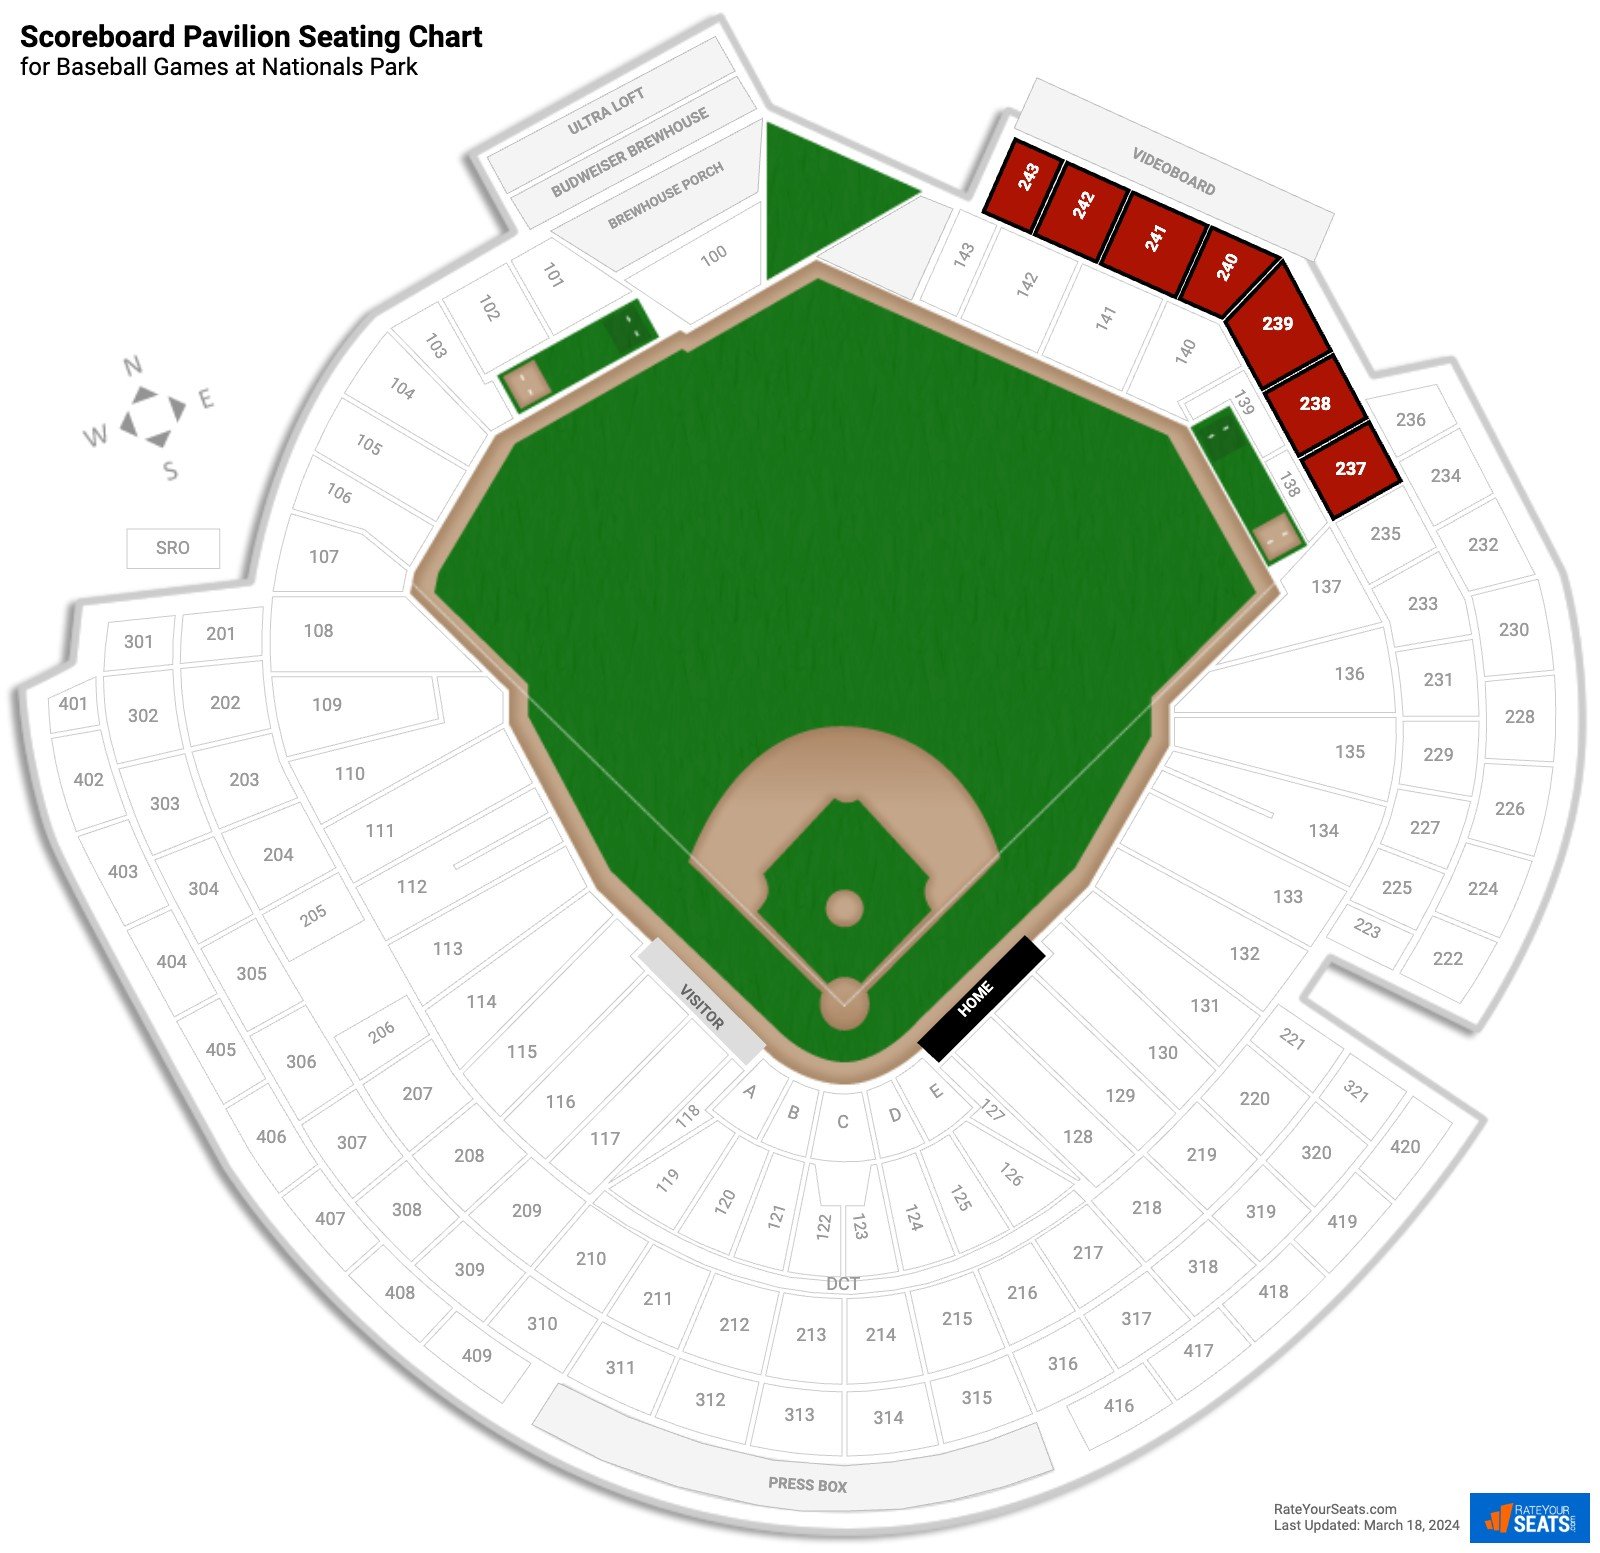 Baseball Scoreboard Pavilion Seating Chart at Nationals Park